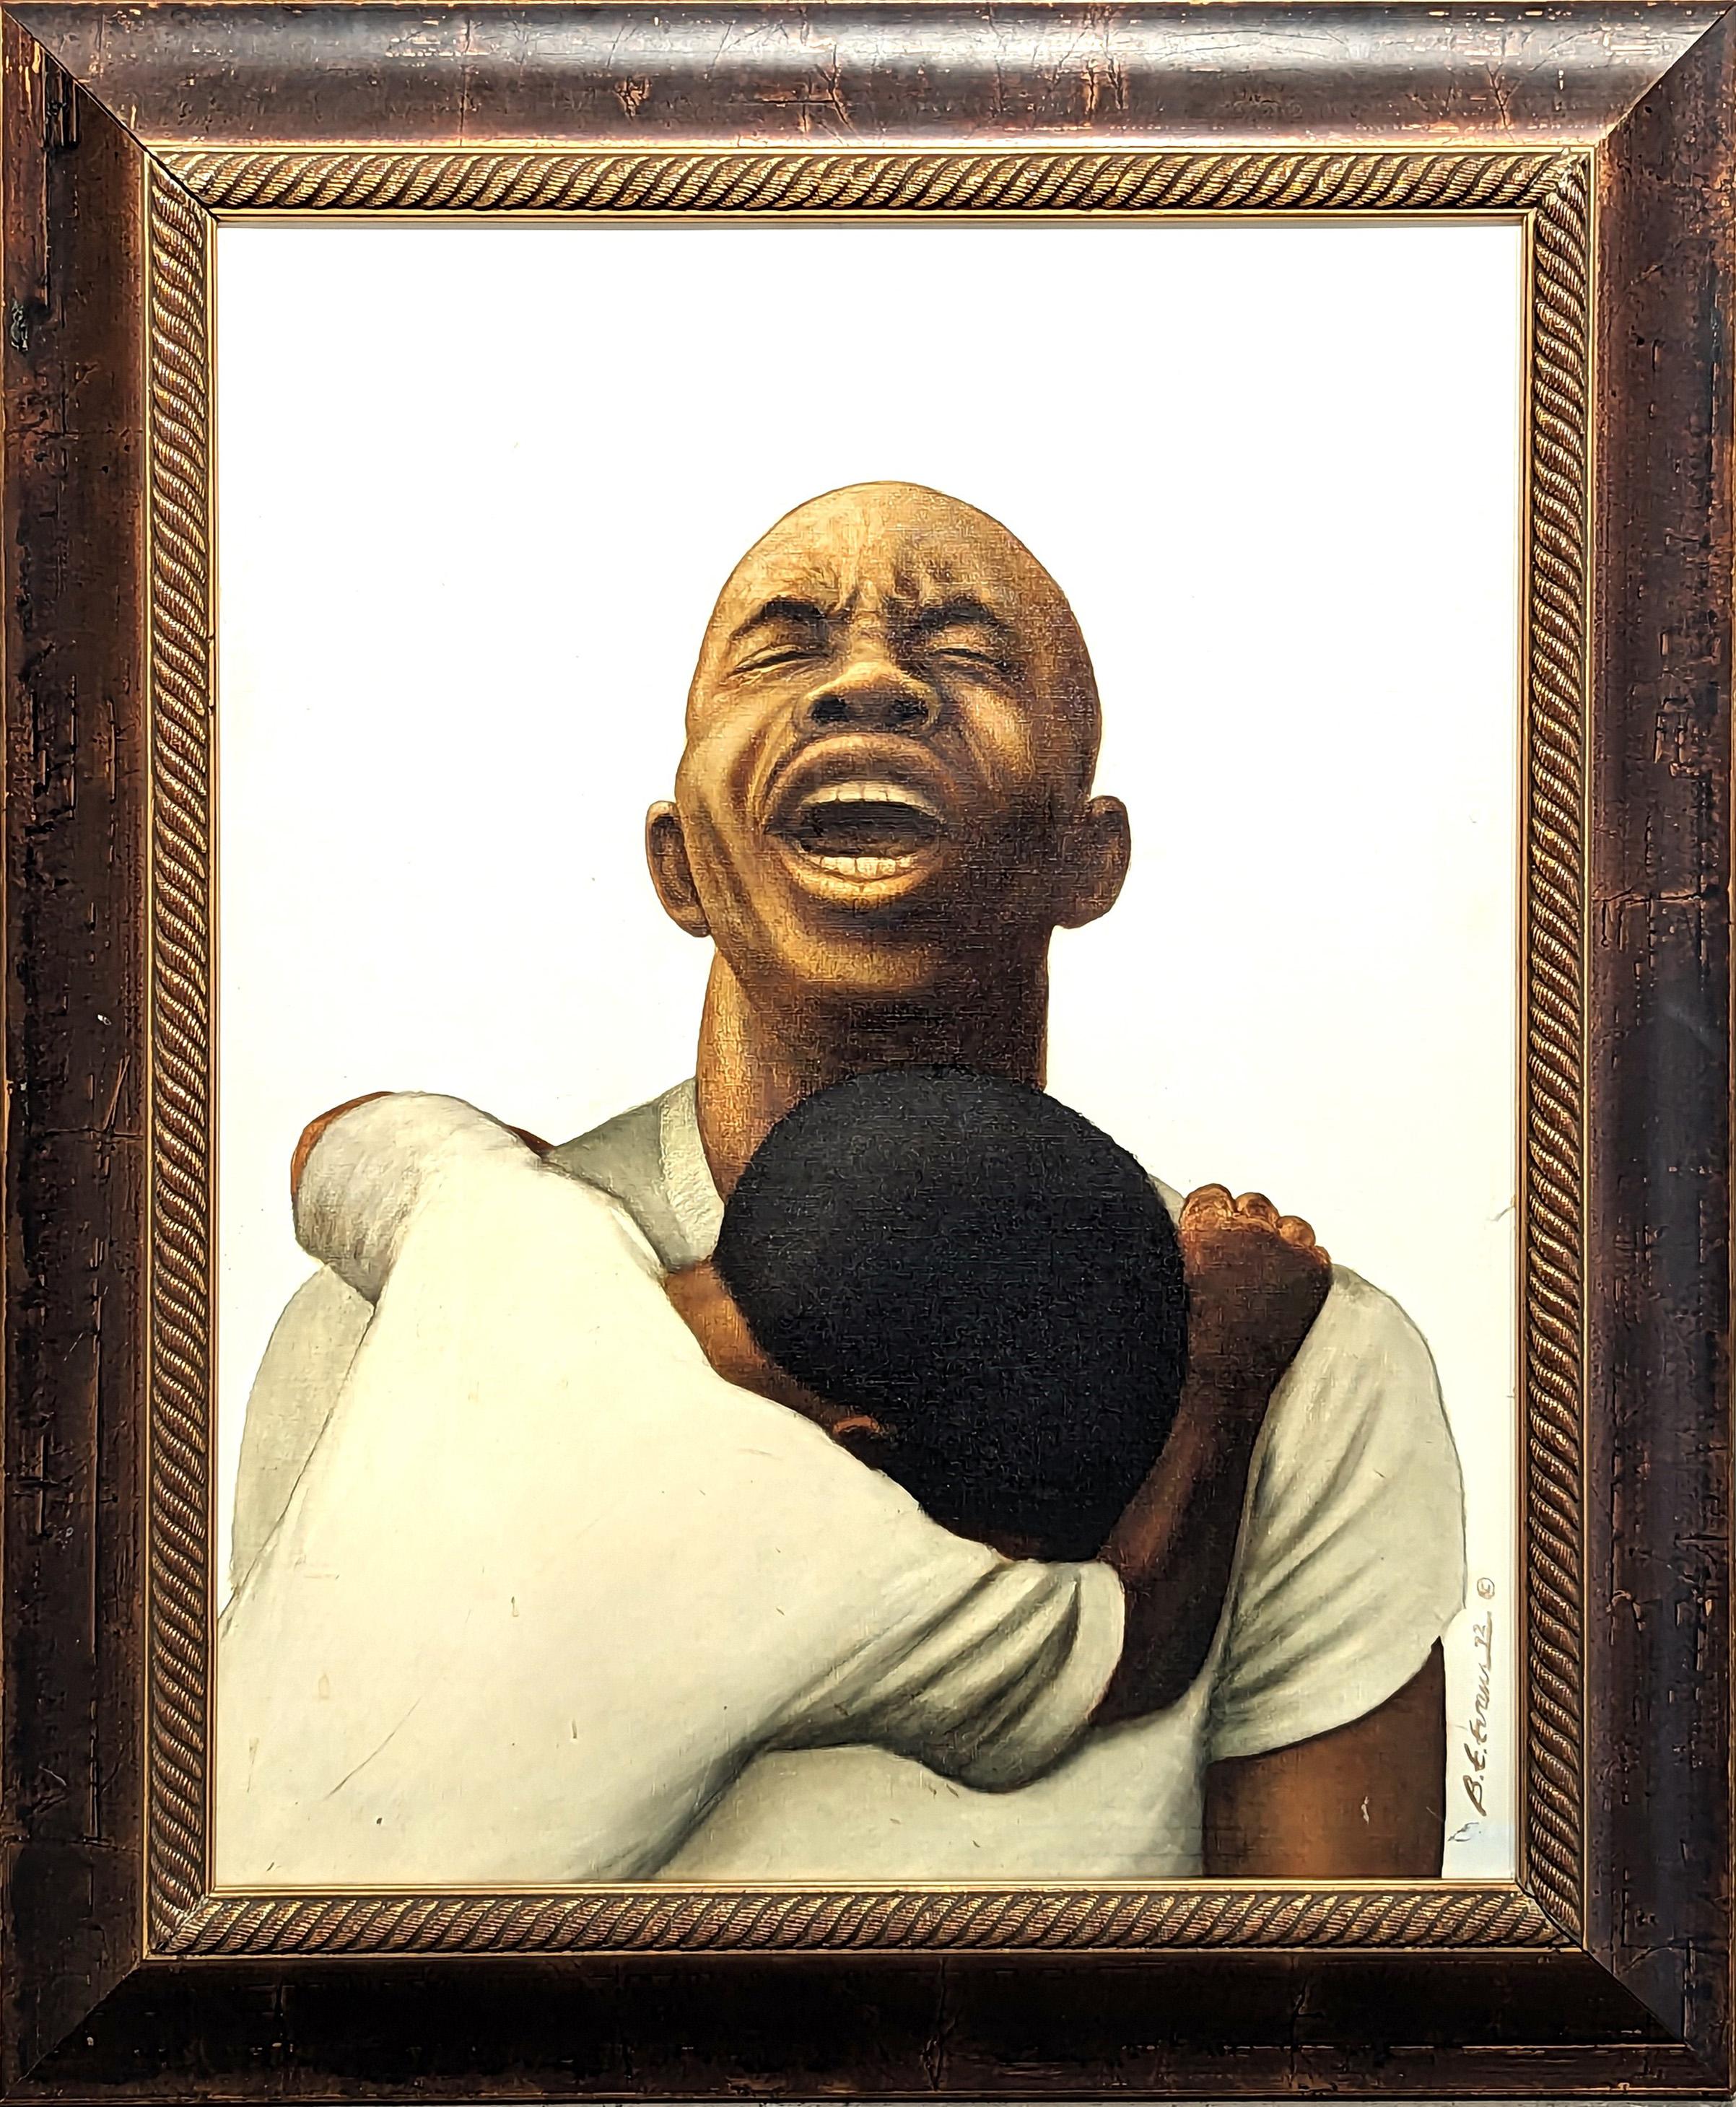 Portrait Painting Buford Evans - God Save the Children Portrait figuratif précoce d'un homme noir angoissé